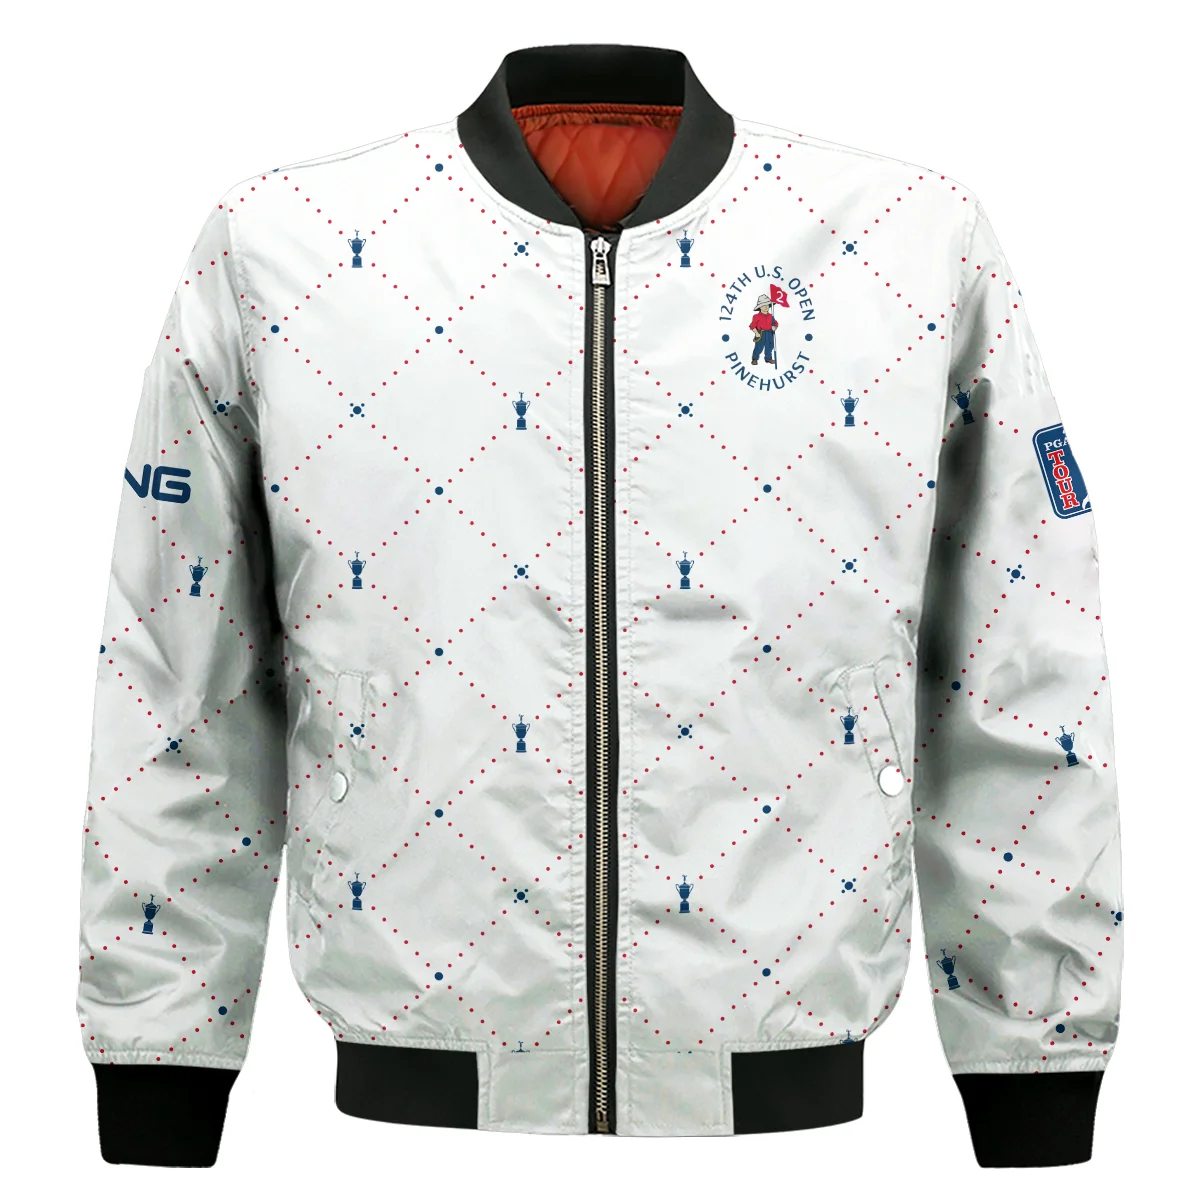 Argyle Pattern With Cup 124th U.S. Open Pinehurst Ping Sleeveless Jacket Style Classic Sleeveless Jacket